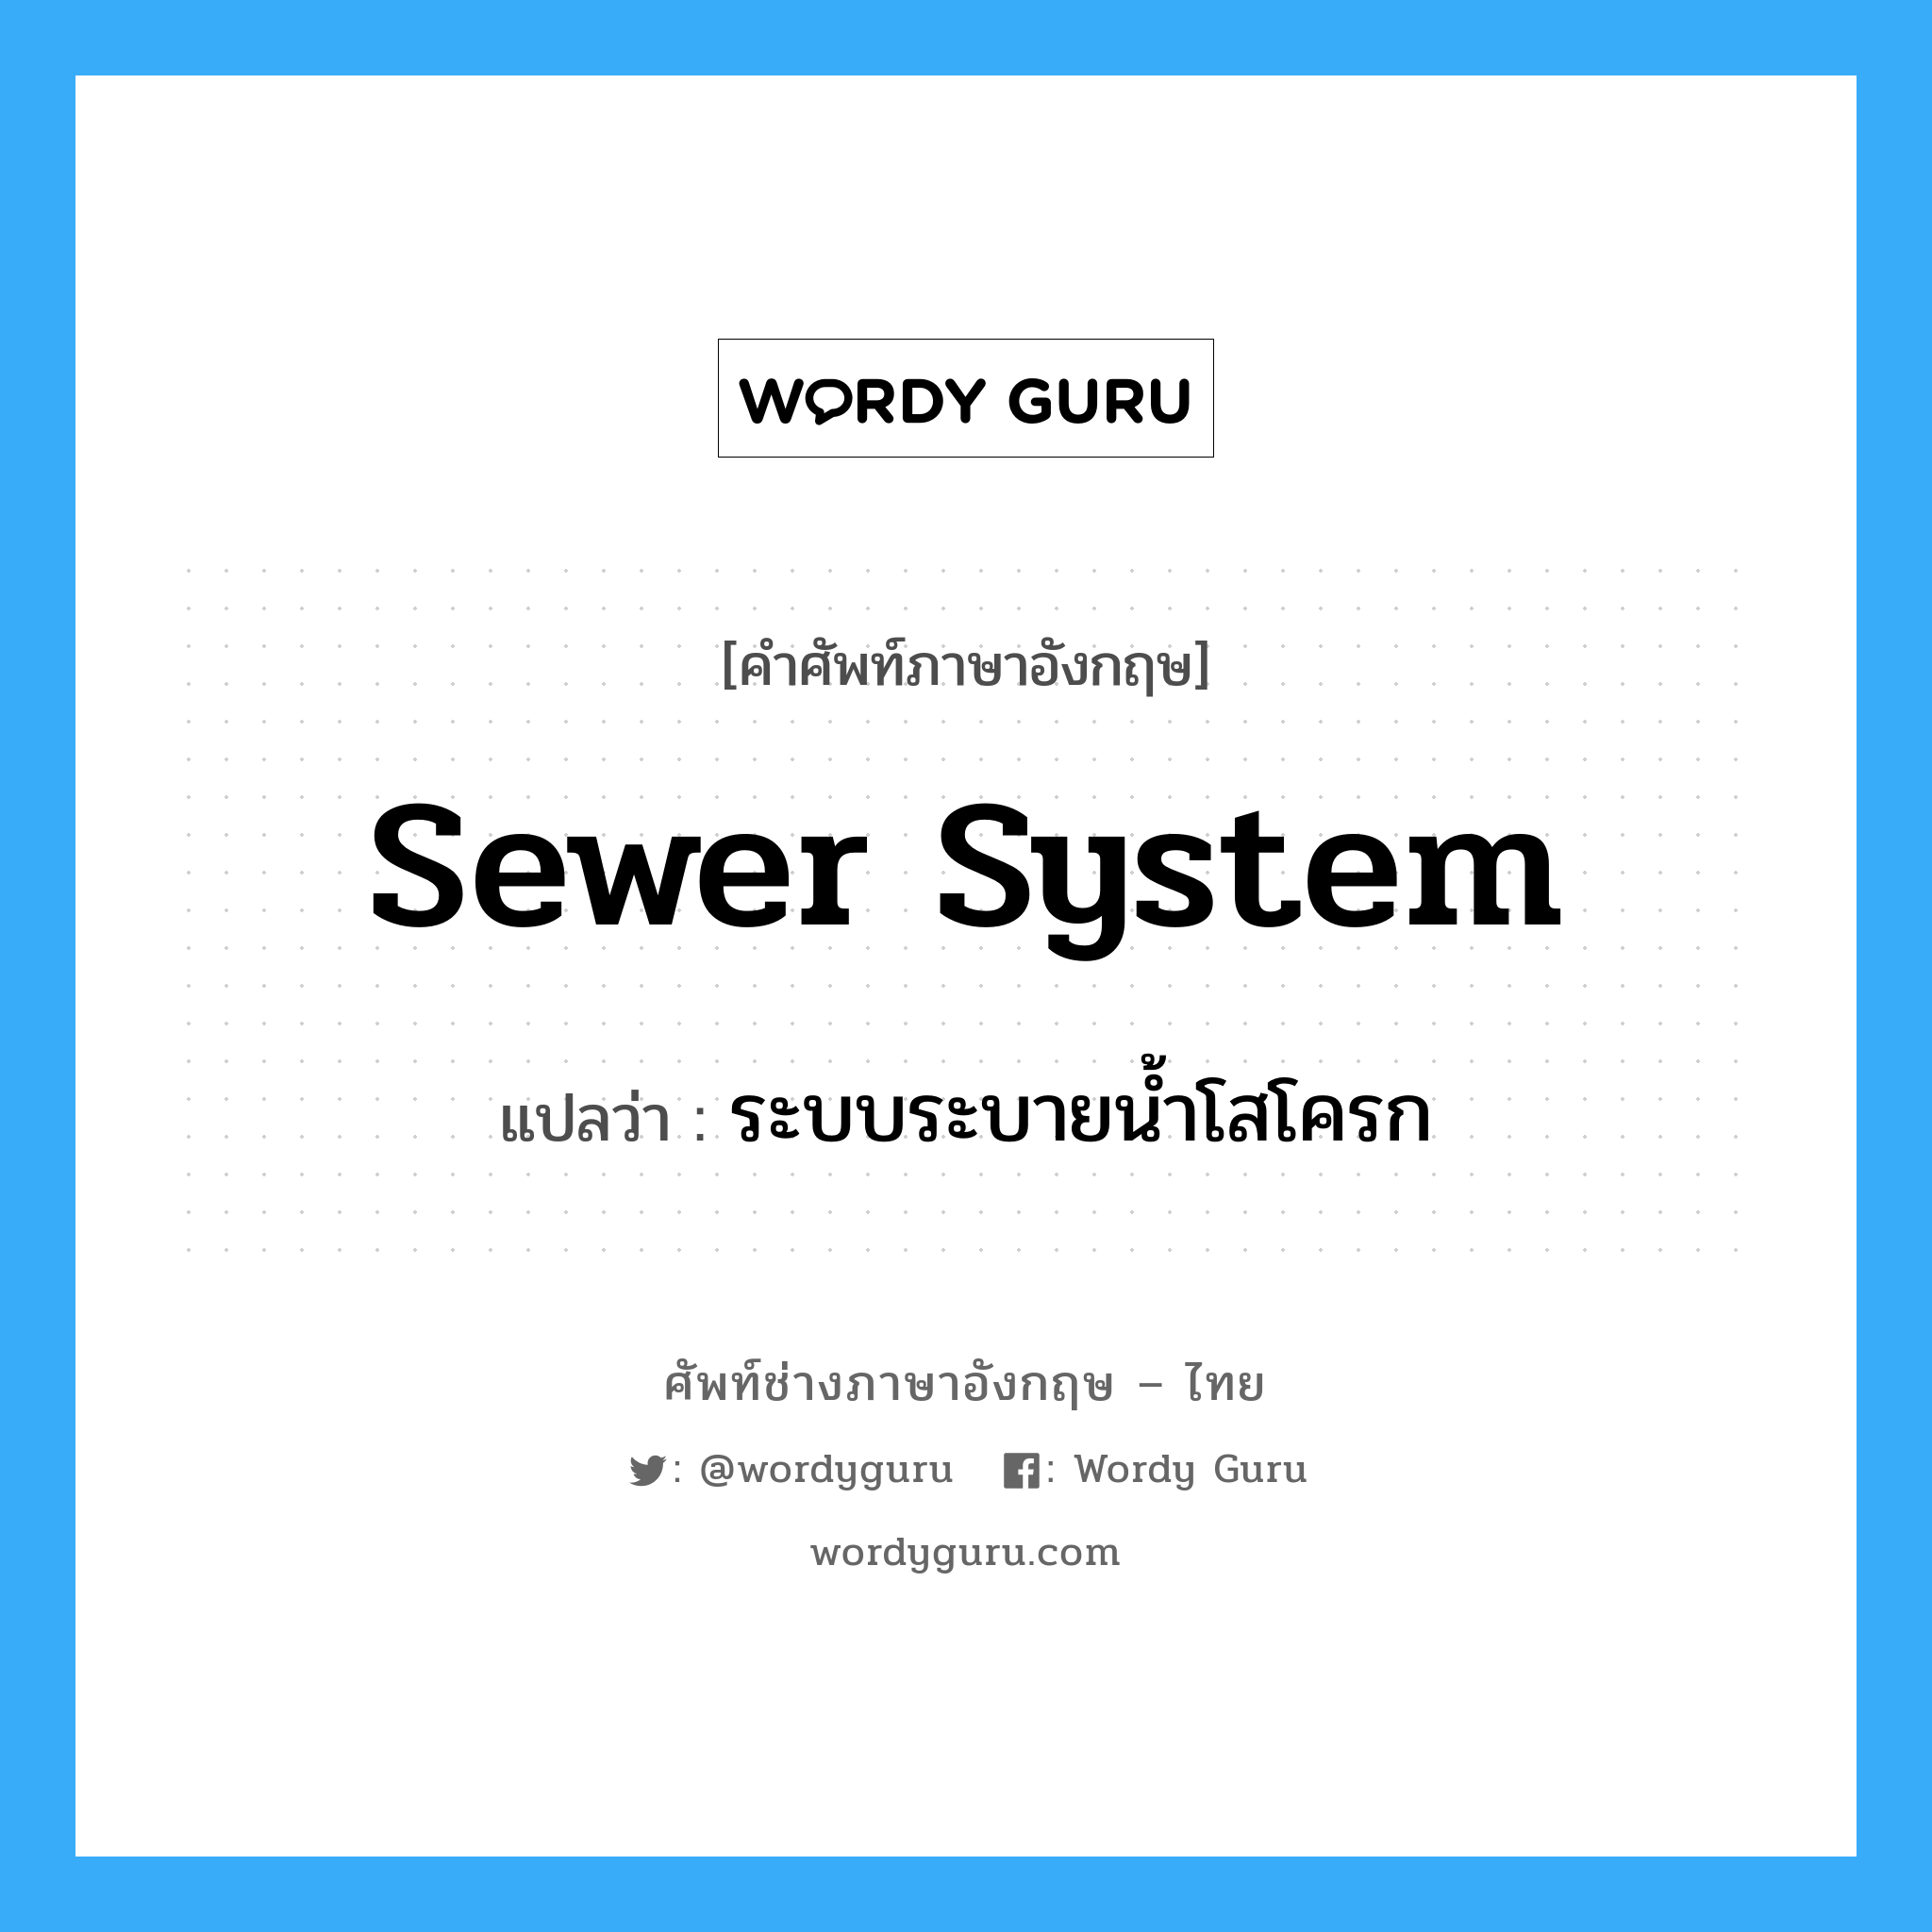 ระบบระบายน้ำโสโครก ภาษาอังกฤษ?, คำศัพท์ช่างภาษาอังกฤษ - ไทย ระบบระบายน้ำโสโครก คำศัพท์ภาษาอังกฤษ ระบบระบายน้ำโสโครก แปลว่า sewer system